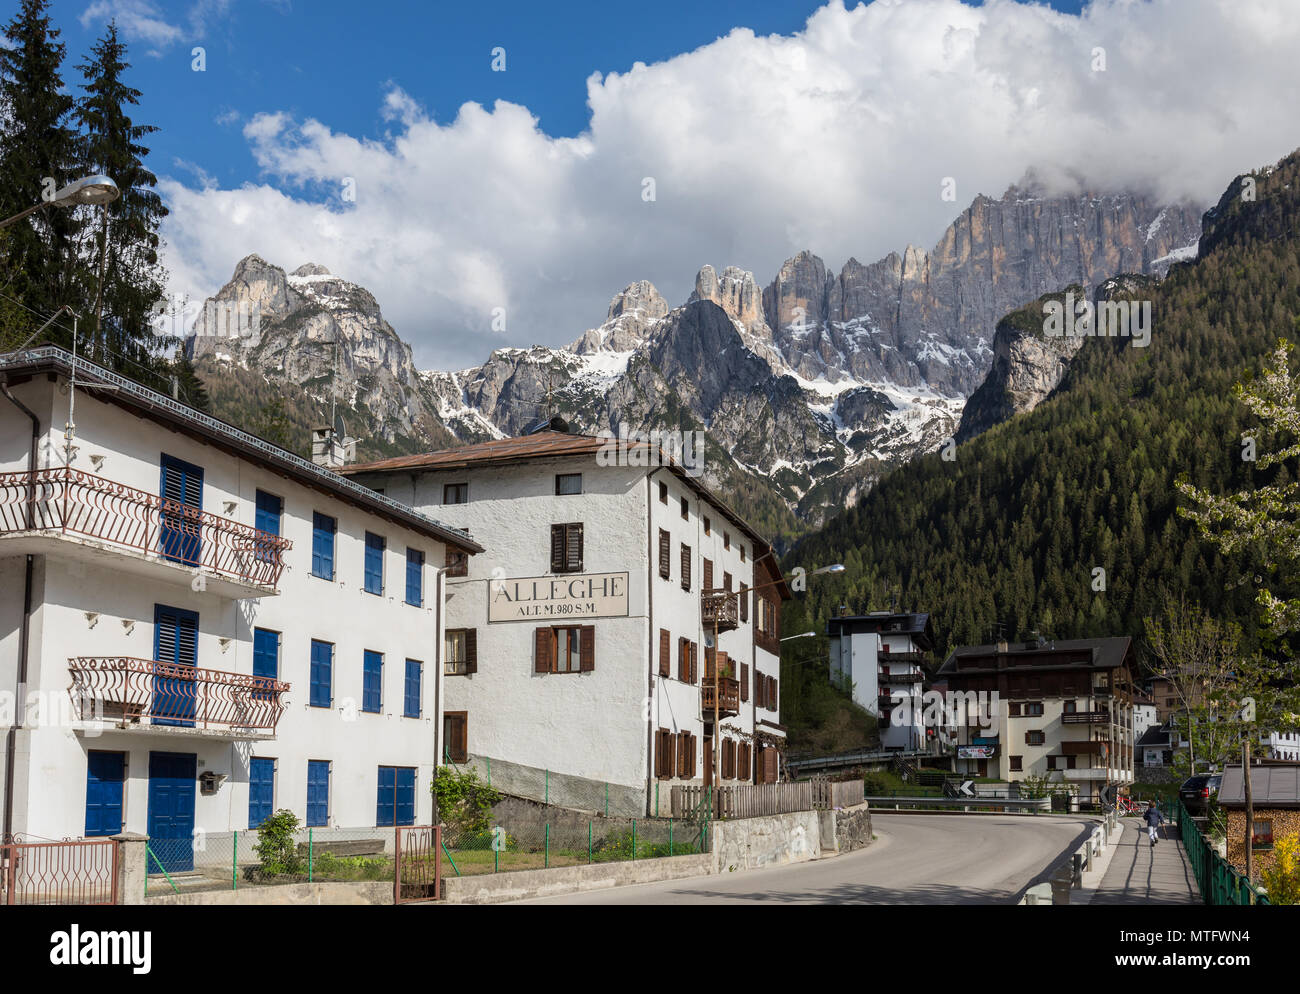 Village italien Alleghe et montagne Civetta en arrière-plan, Dolomites, Italie Banque D'Images